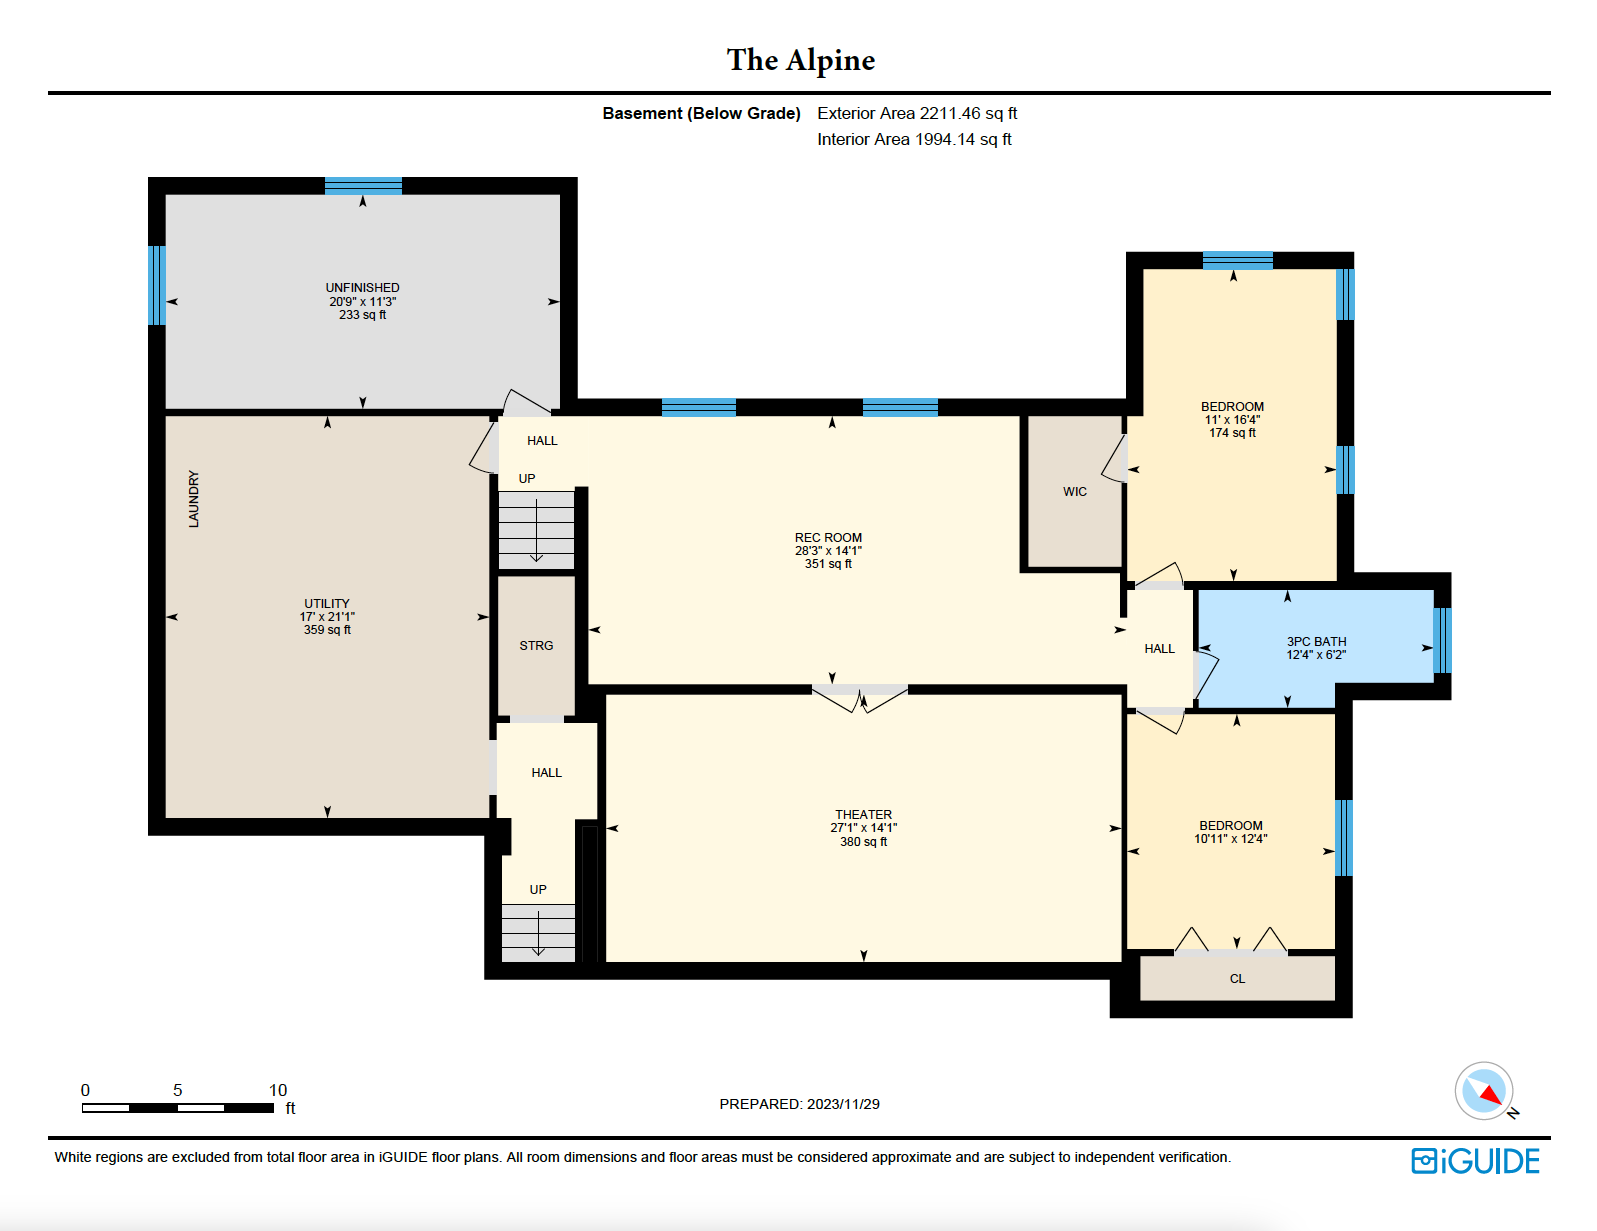 The Alpine Basement Floor Plan